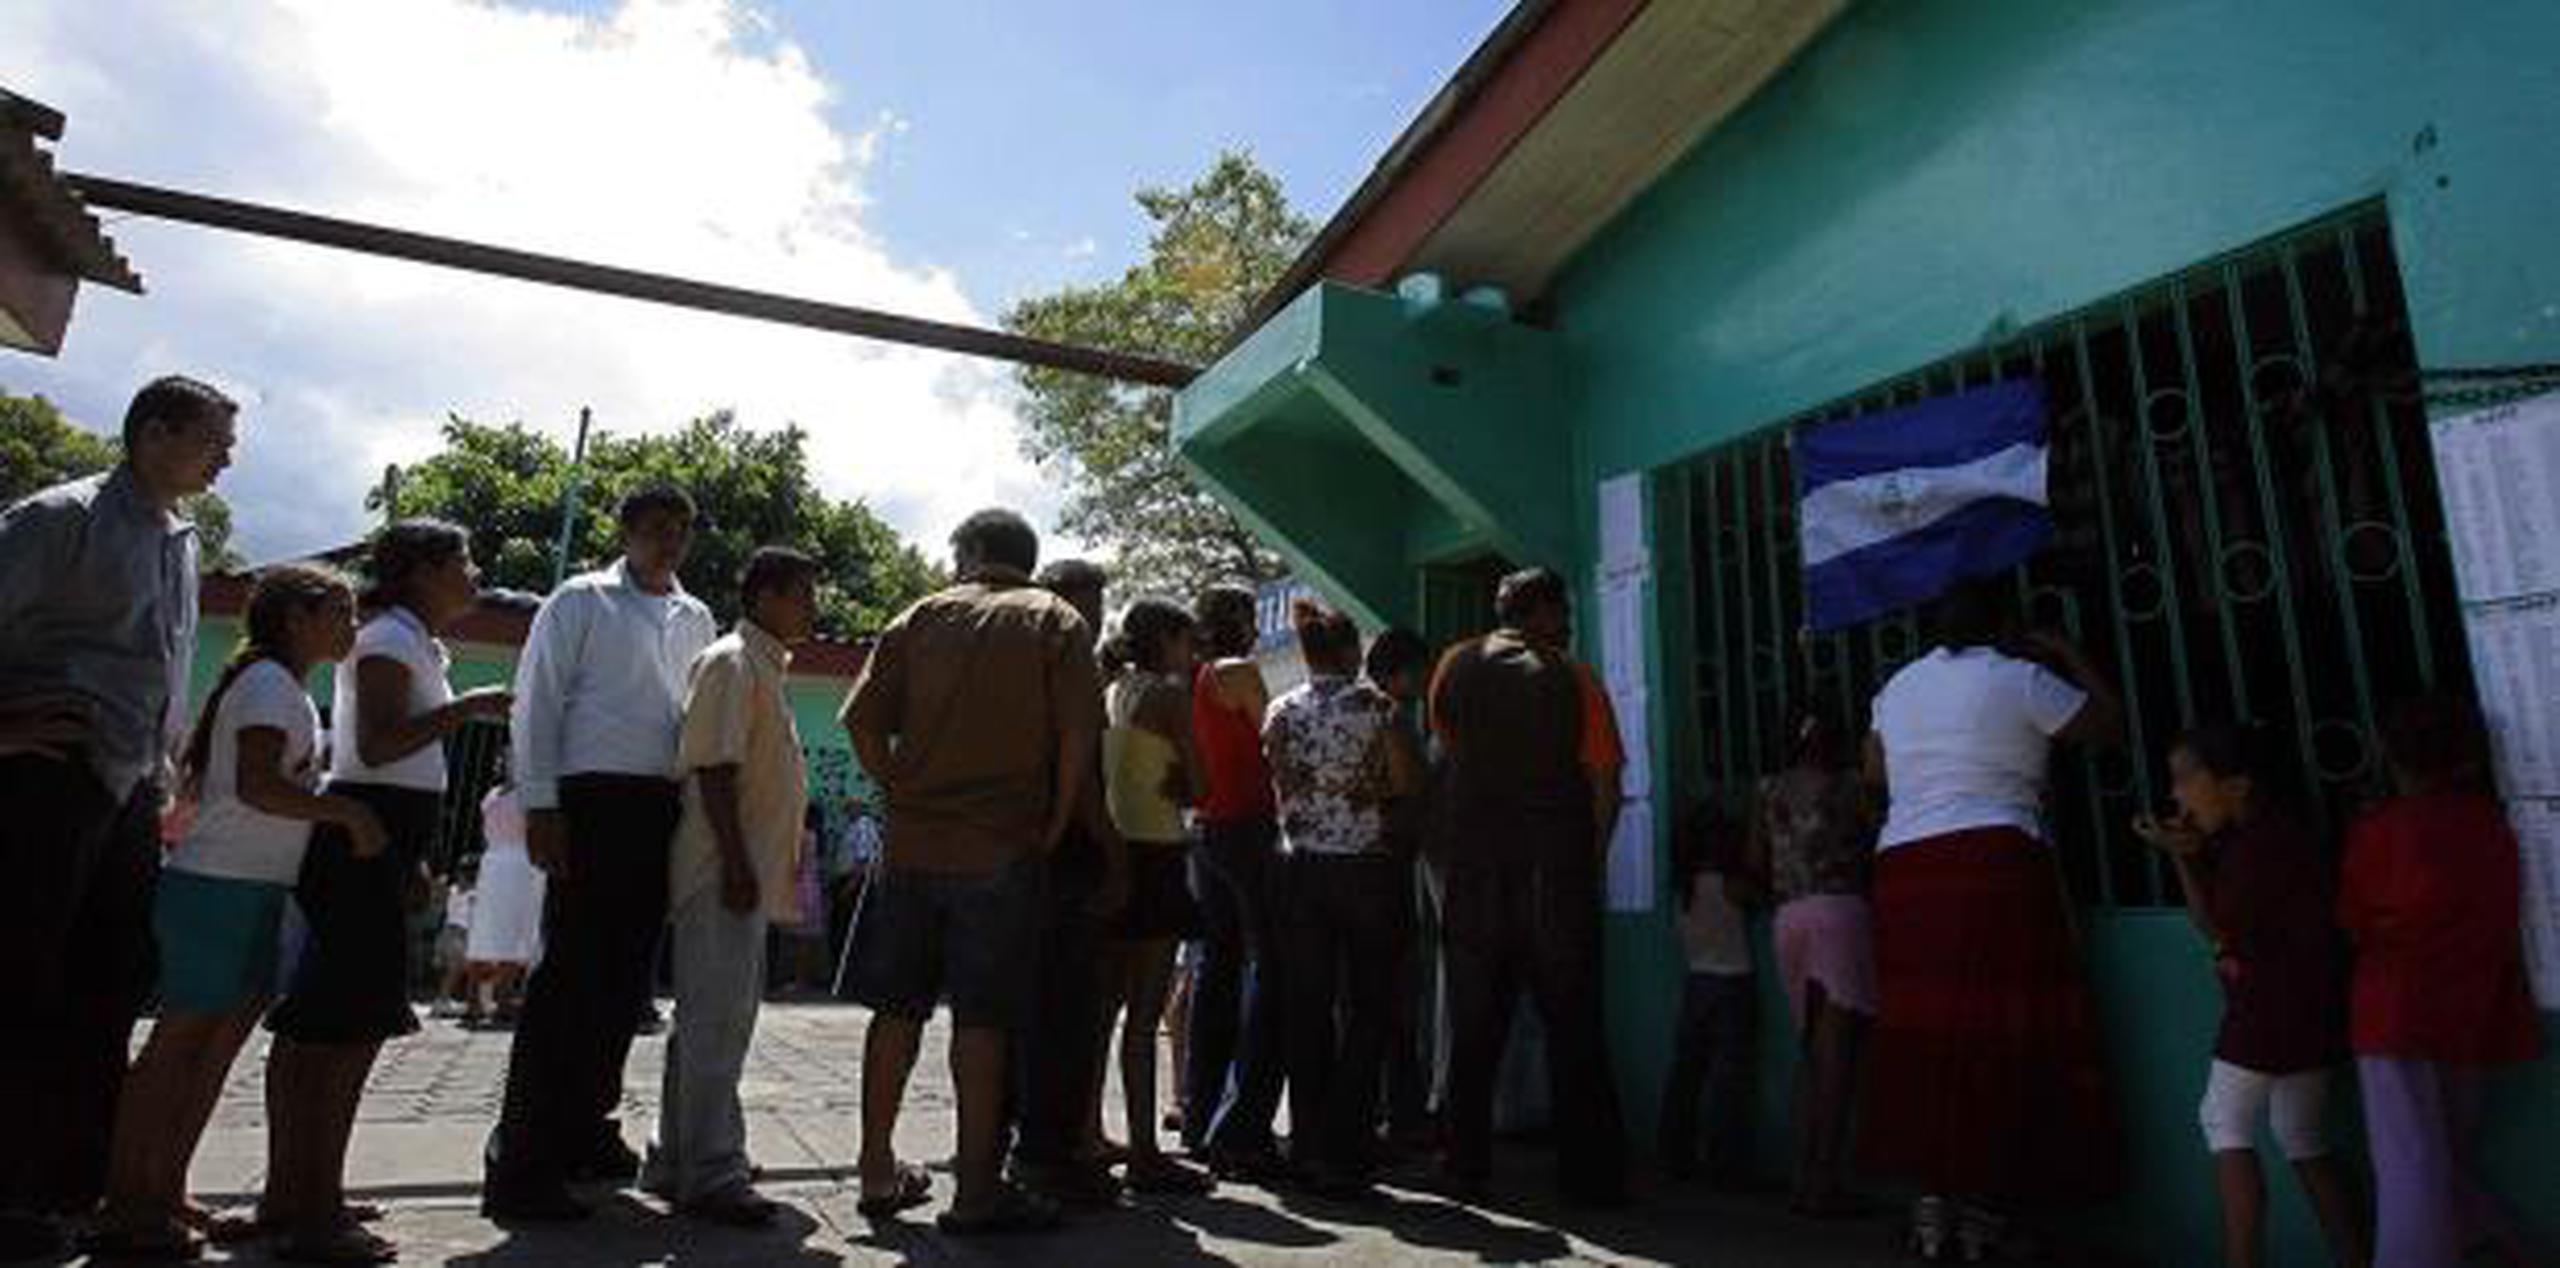 La diputada opositora Azucena Castillo dijo que esta nacionalización permitirá al gobierno “seguir lavando dinero”. (AP)